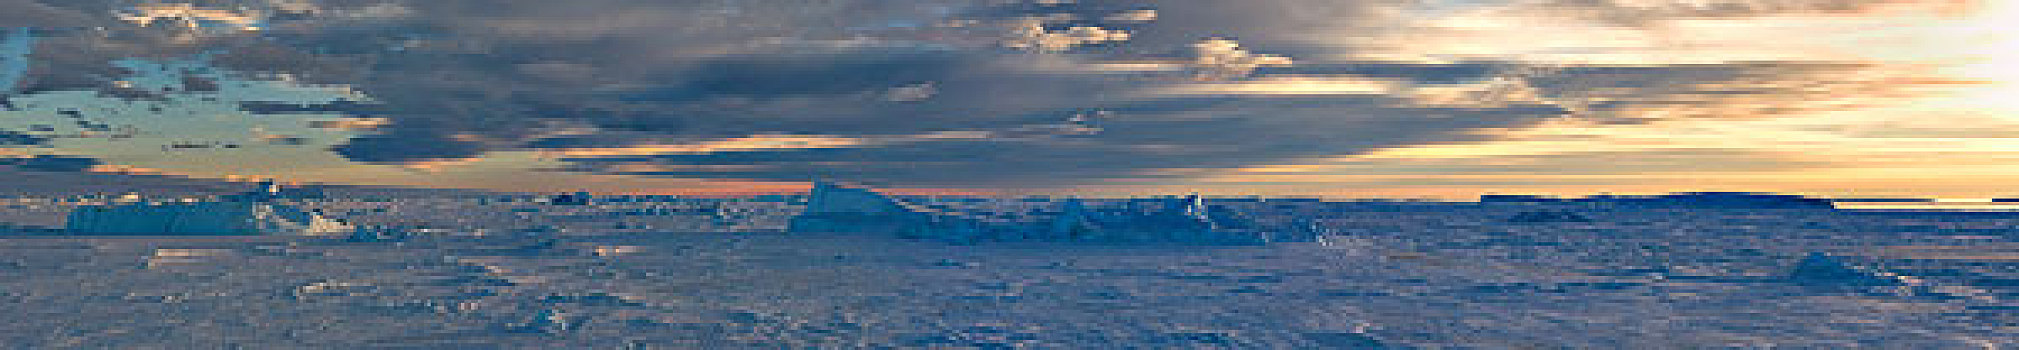 南极,威德尔海,靠近,雪丘岛,全景,海冰,冰山,日落